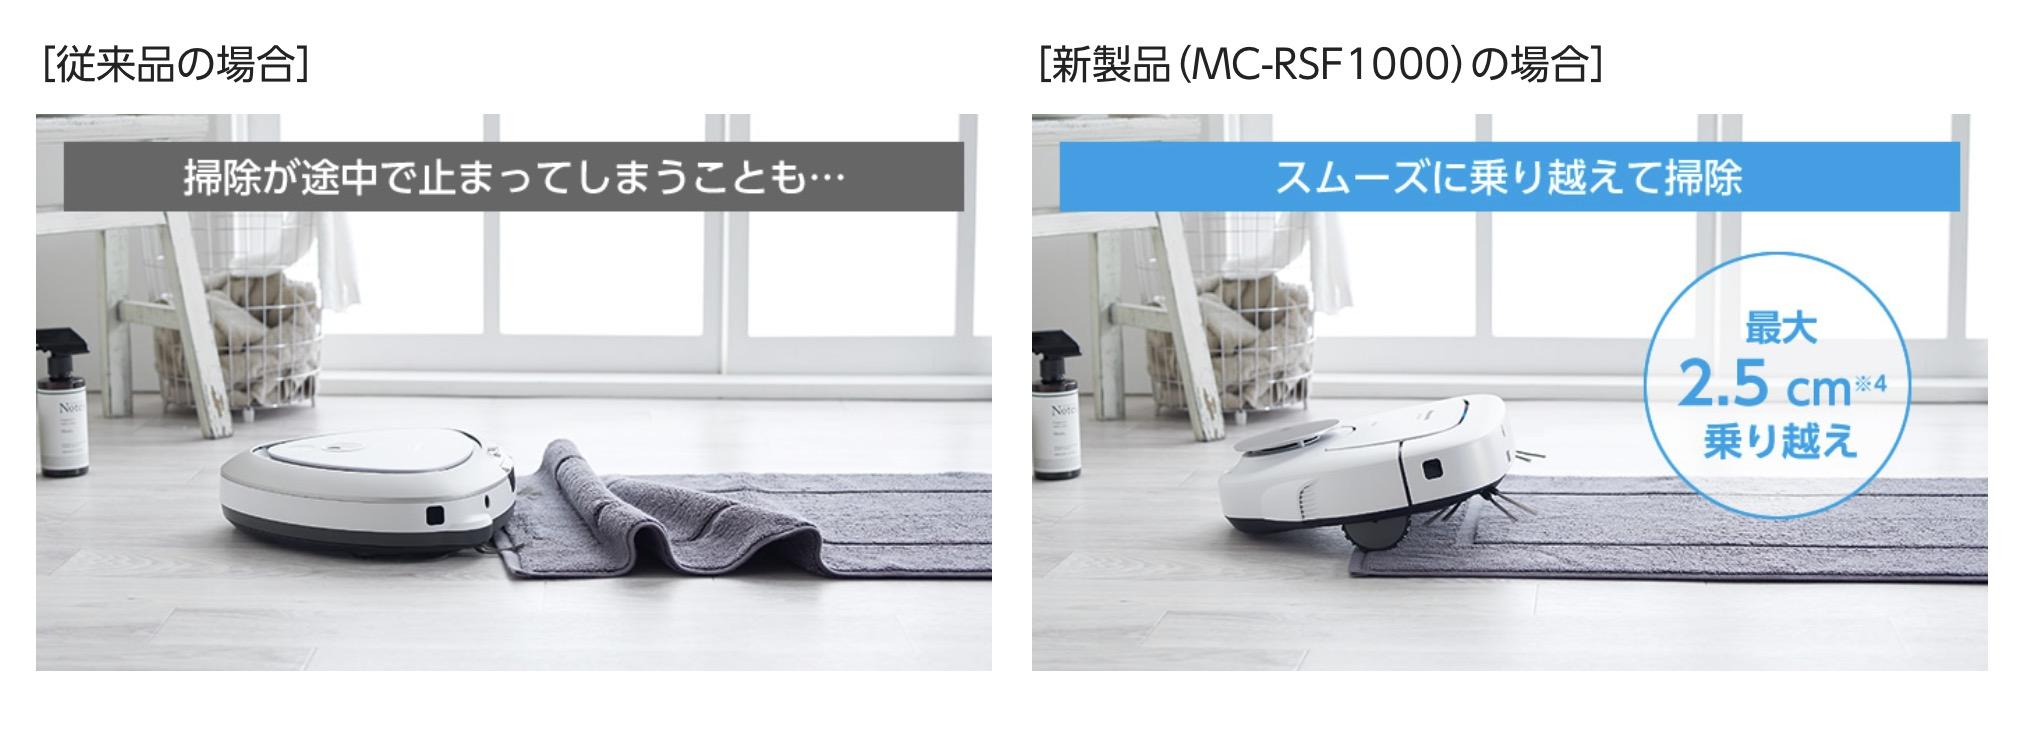 おいで〜。人間の後をついてくるロボット掃除機、新型ルーロ｢MC